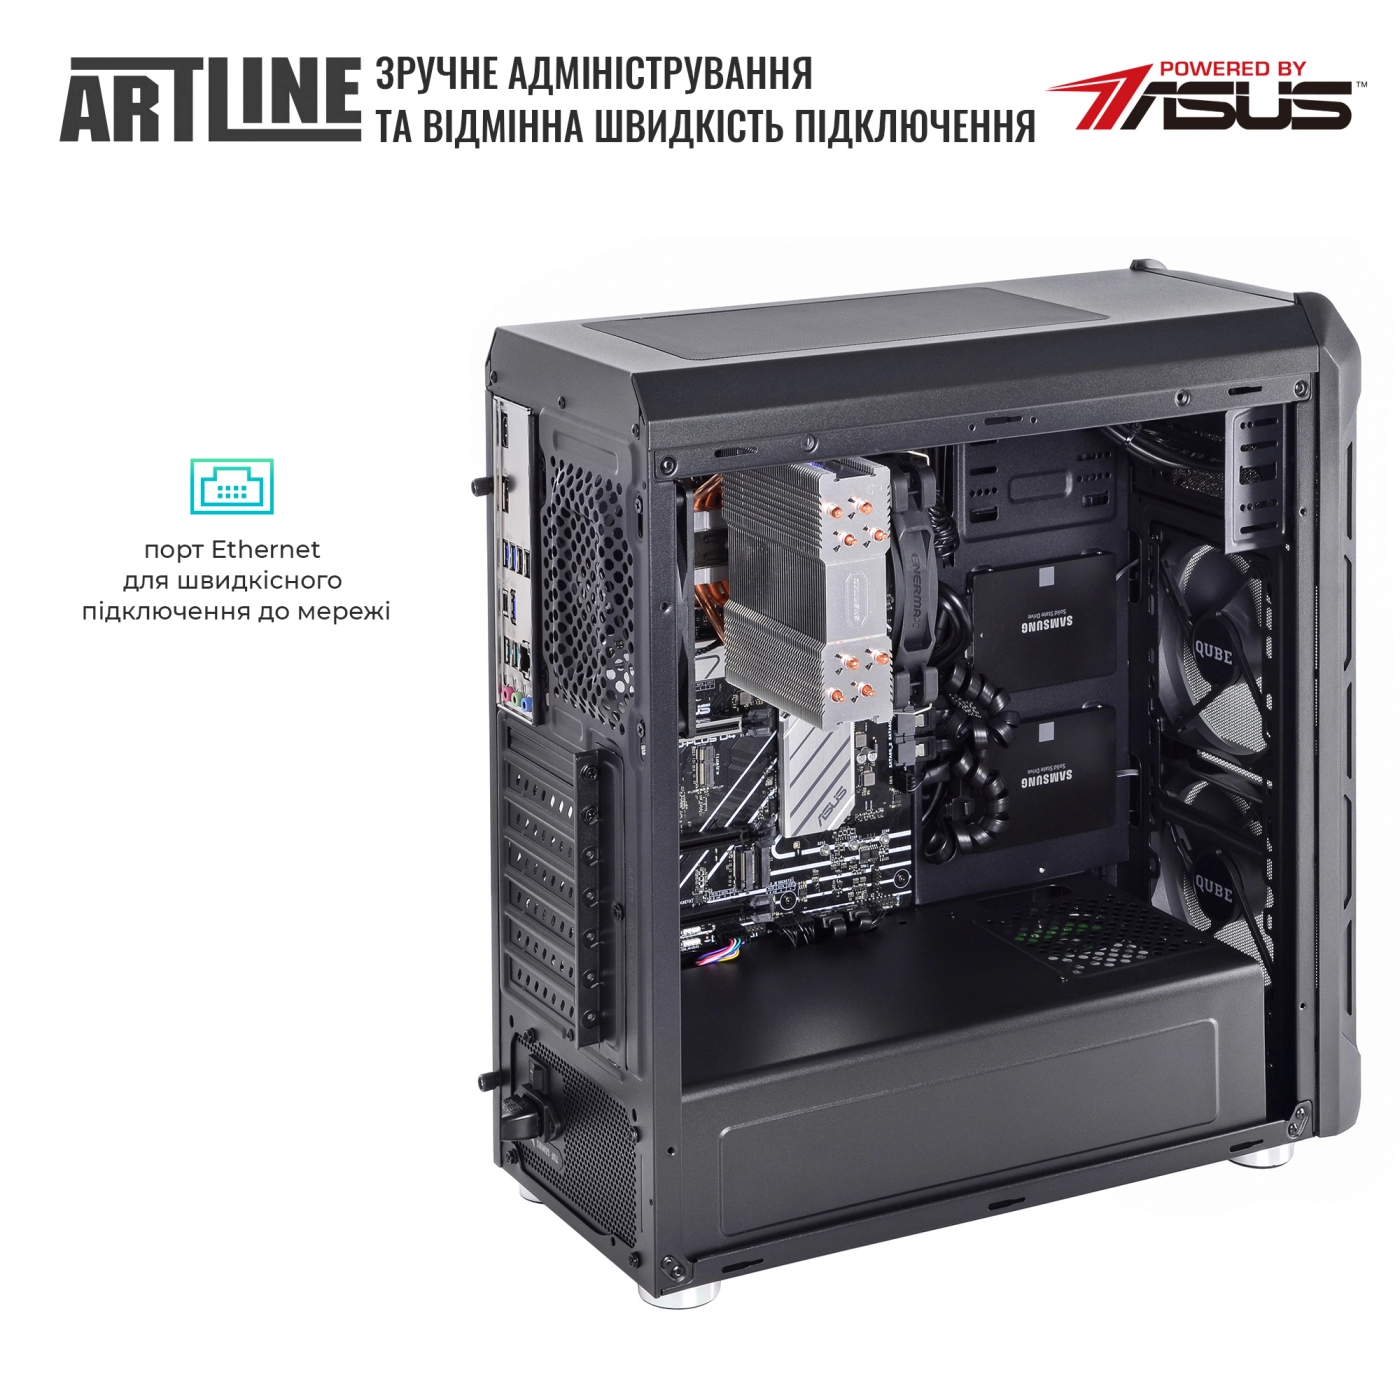 Купить Сервер ARTLINE Business T17v31Win - фото 6